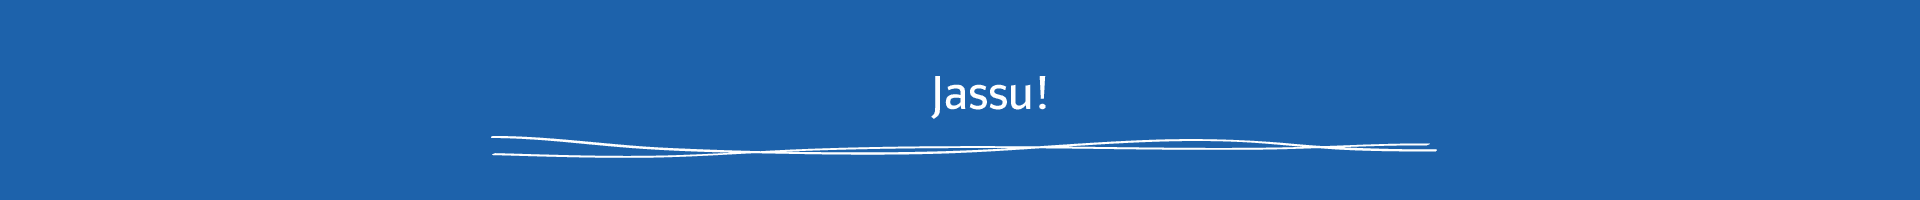 Jassu!